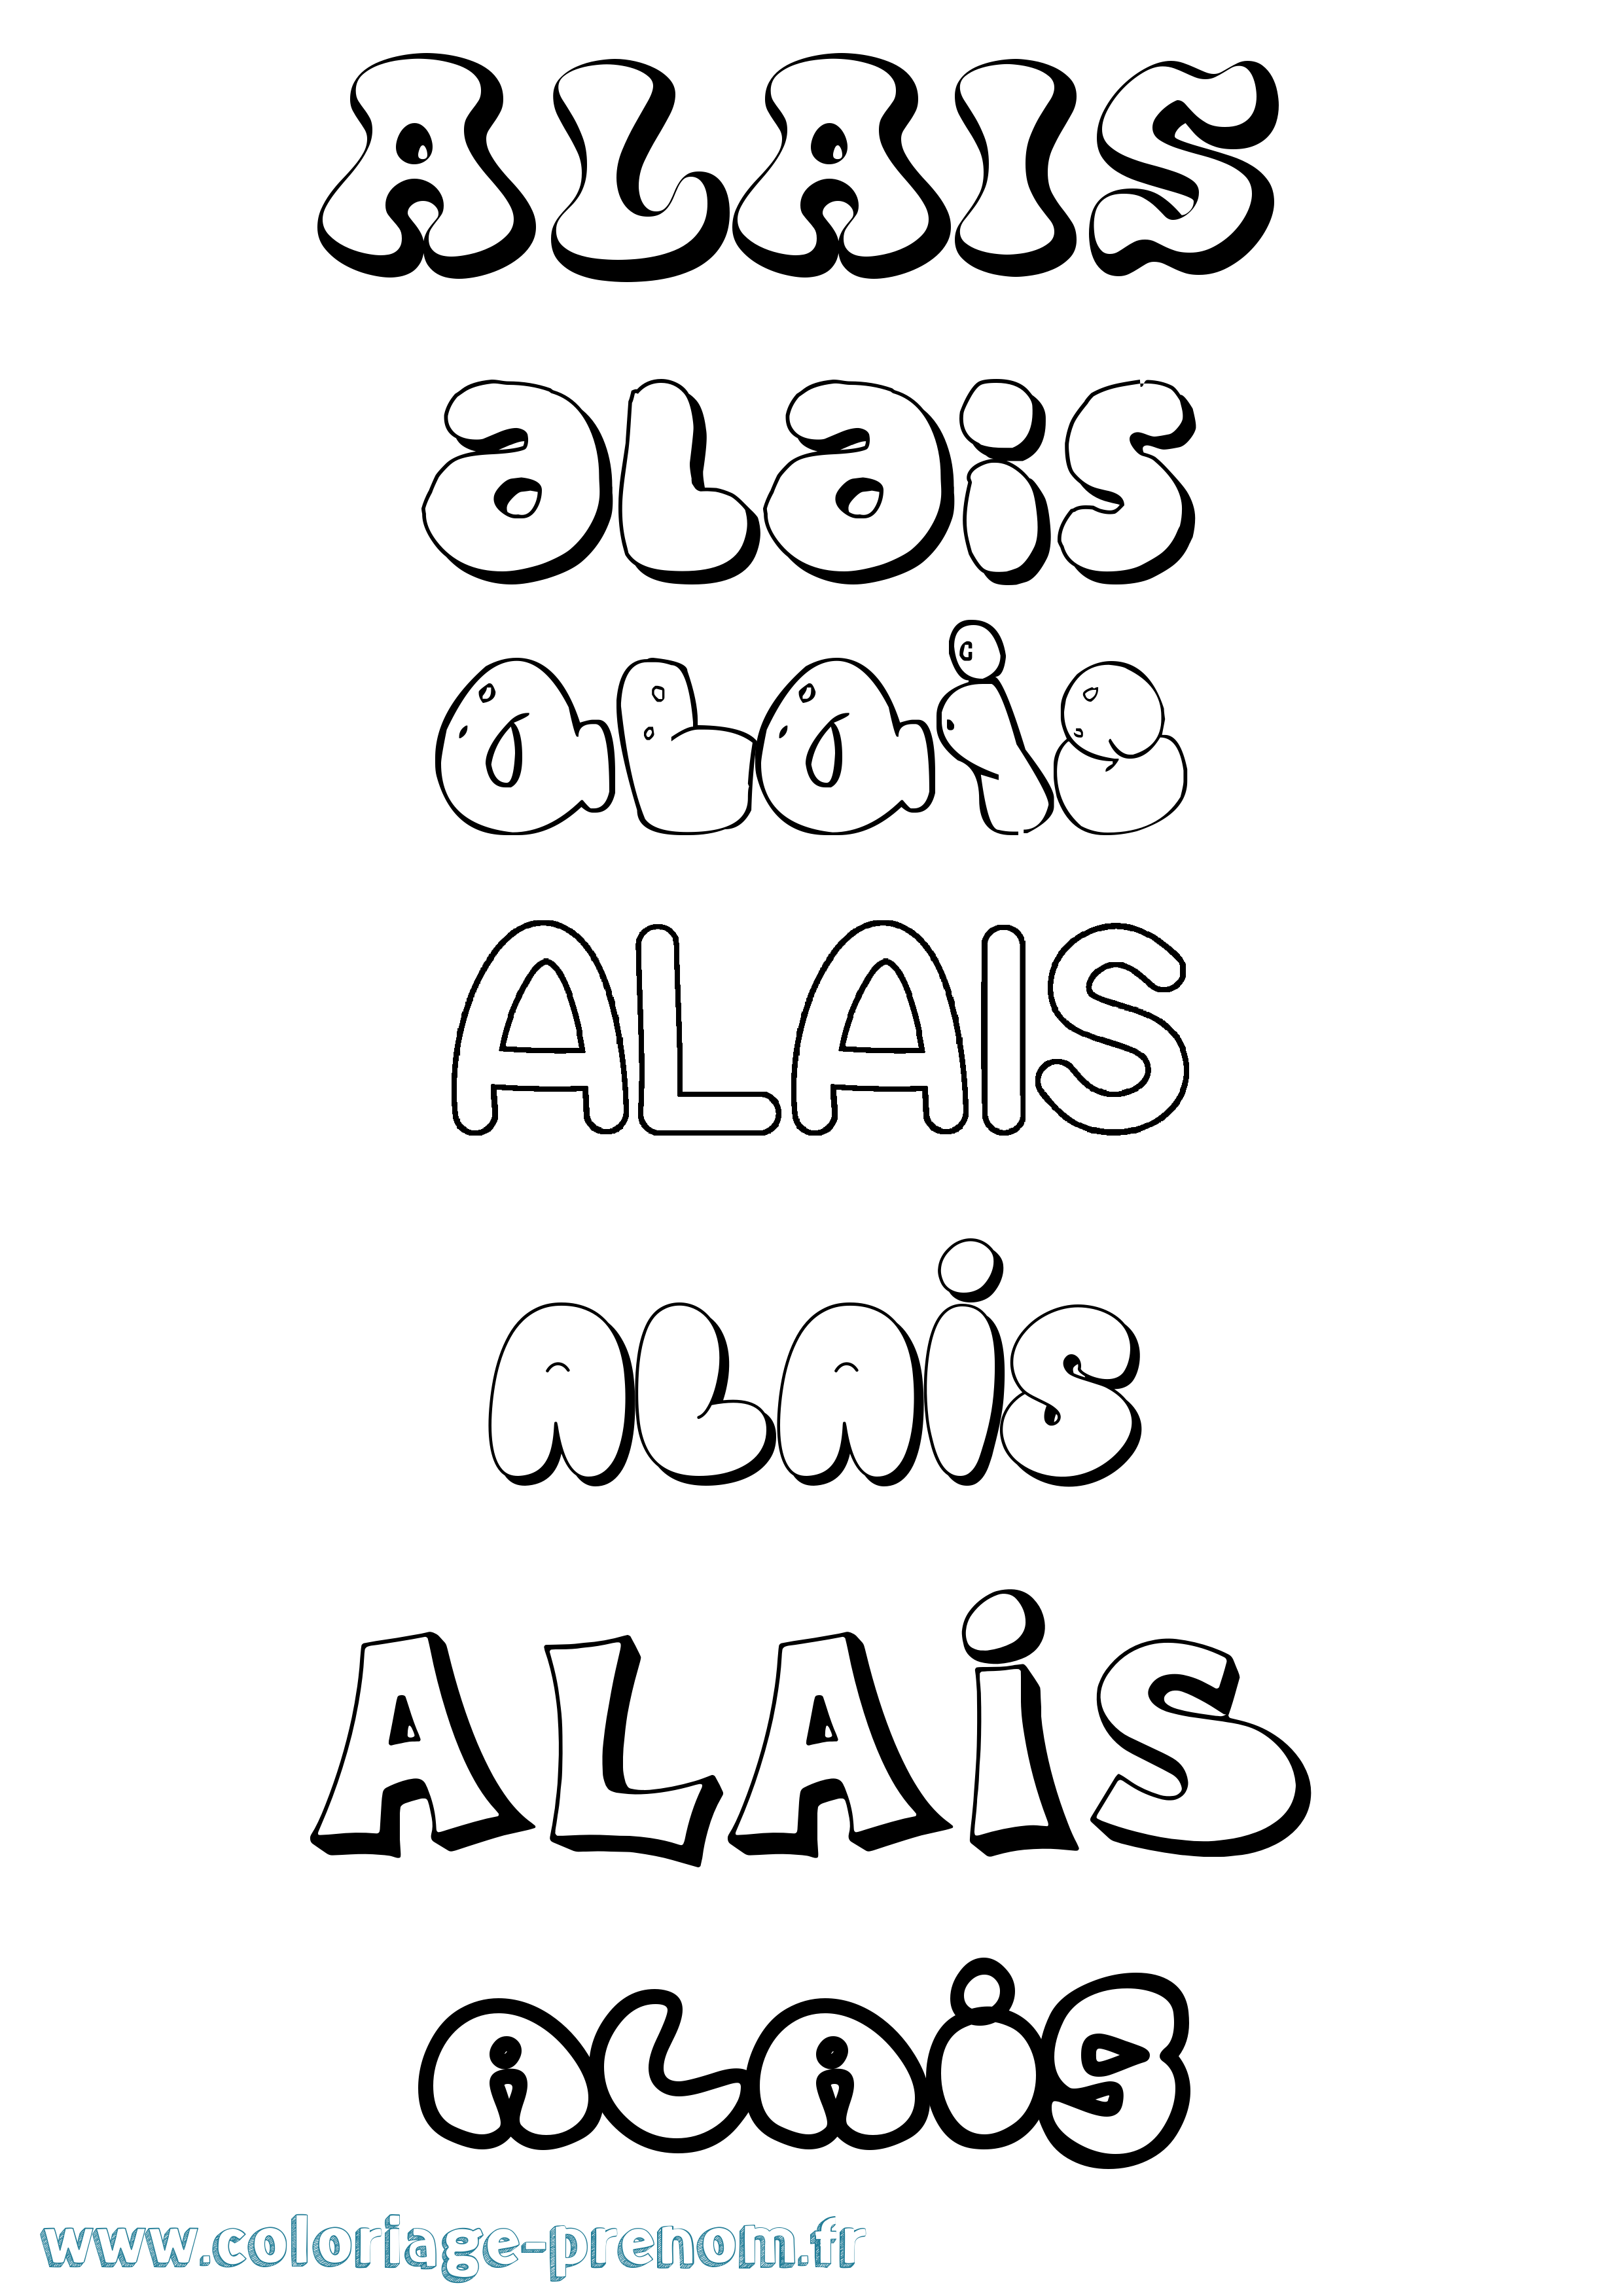 Coloriage prénom Alais Bubble